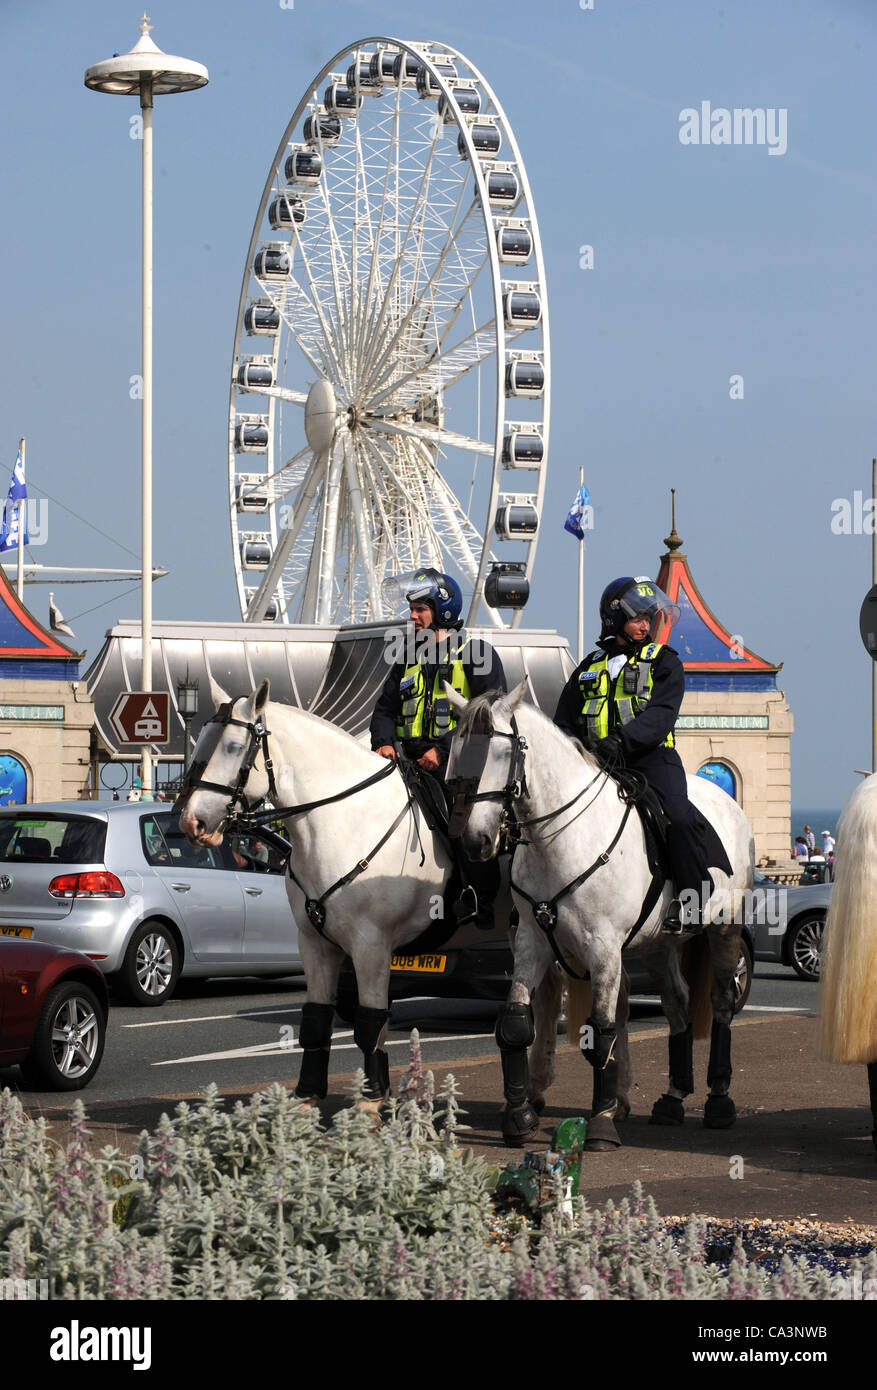 Brighton Regno Unito 2 Giugno 2012 - Polizia bloccano le strade di Brighton oggi per evitare problemi tra l'EDL e anti-fascisti Foto Stock